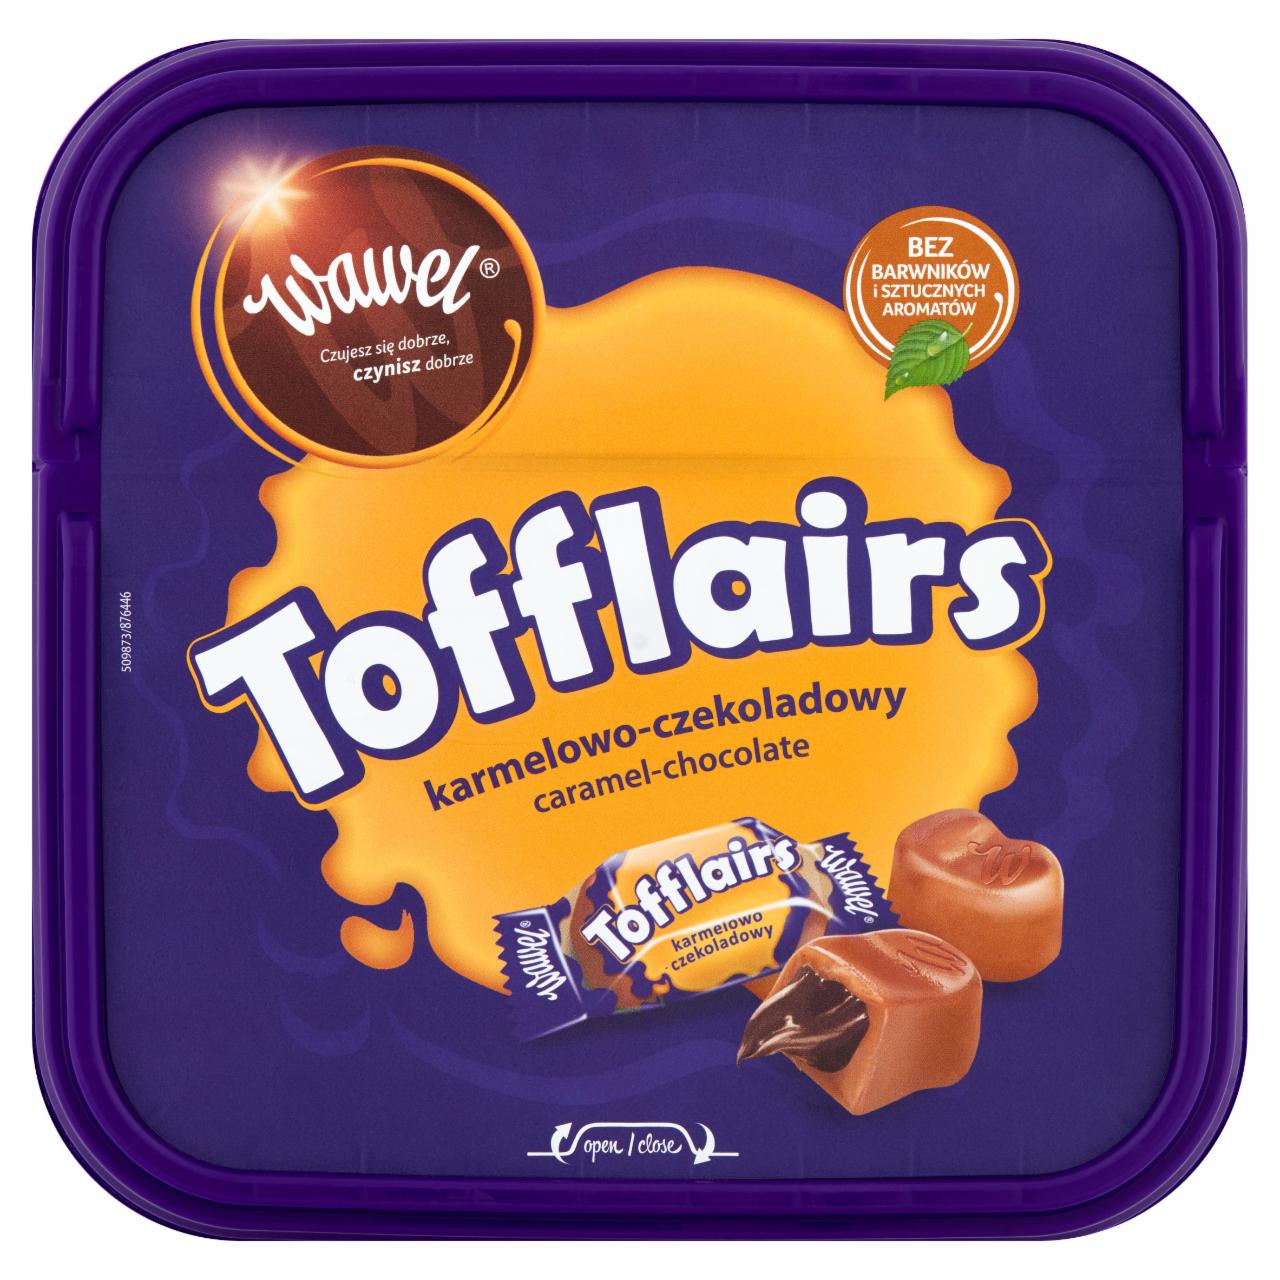 Zdjęcia - Wawel Tofflairs karmelowo-czekoladowy Pomadki mleczne niekrystaliczne 650 g